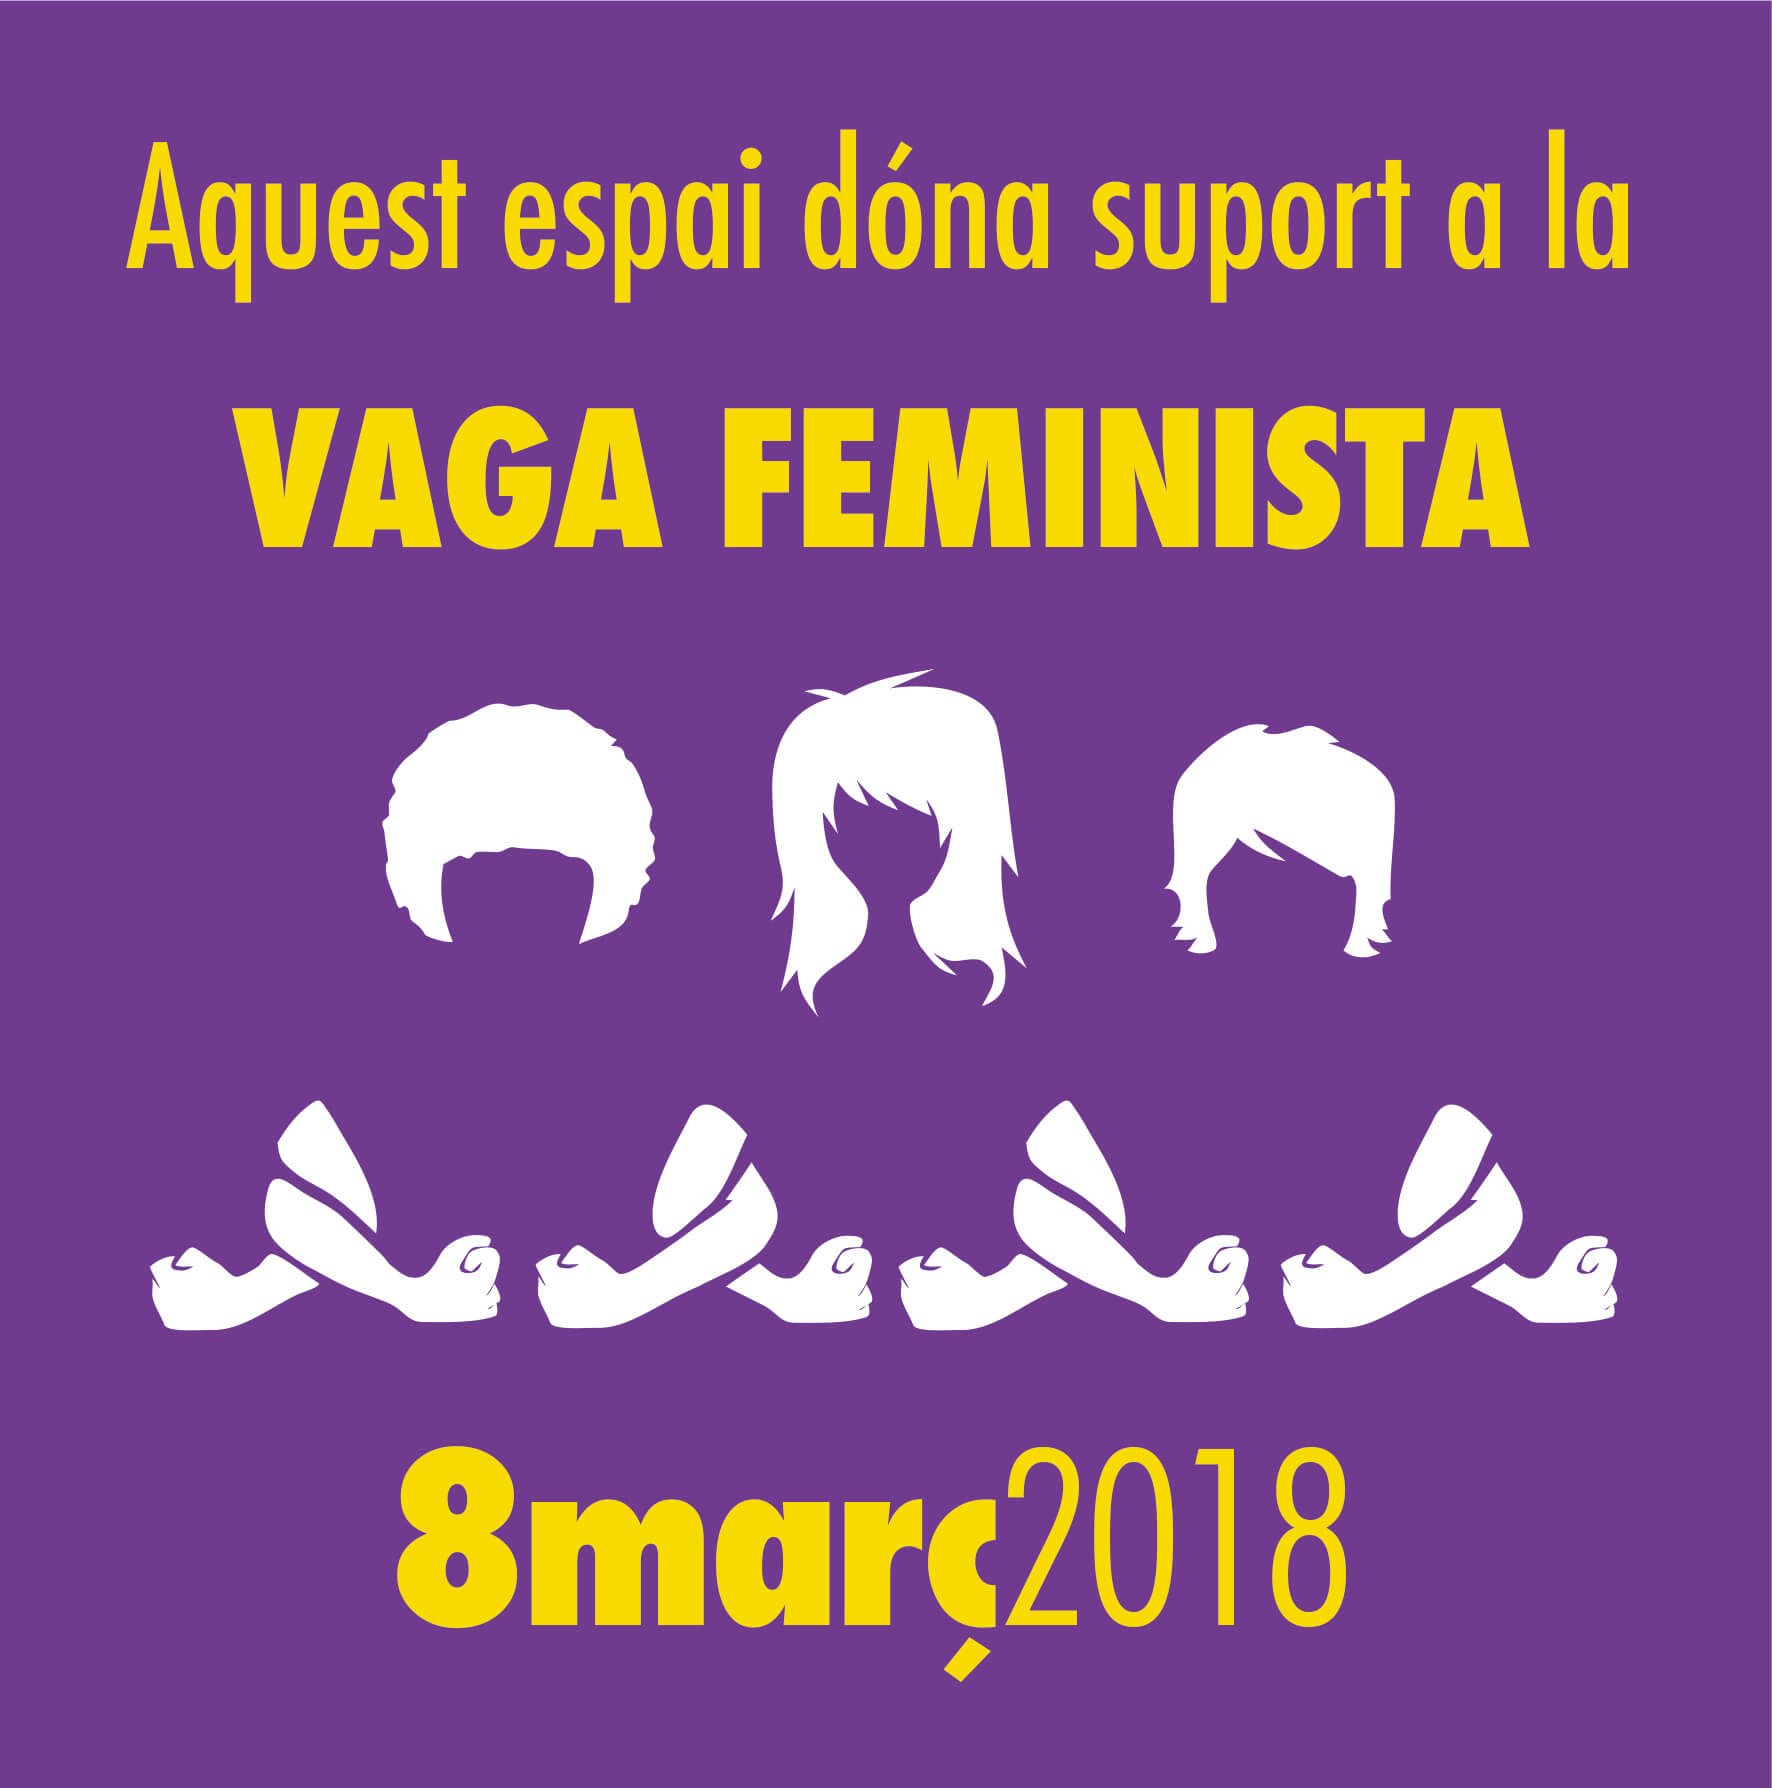 Donem suport a la vaga feminista 8M